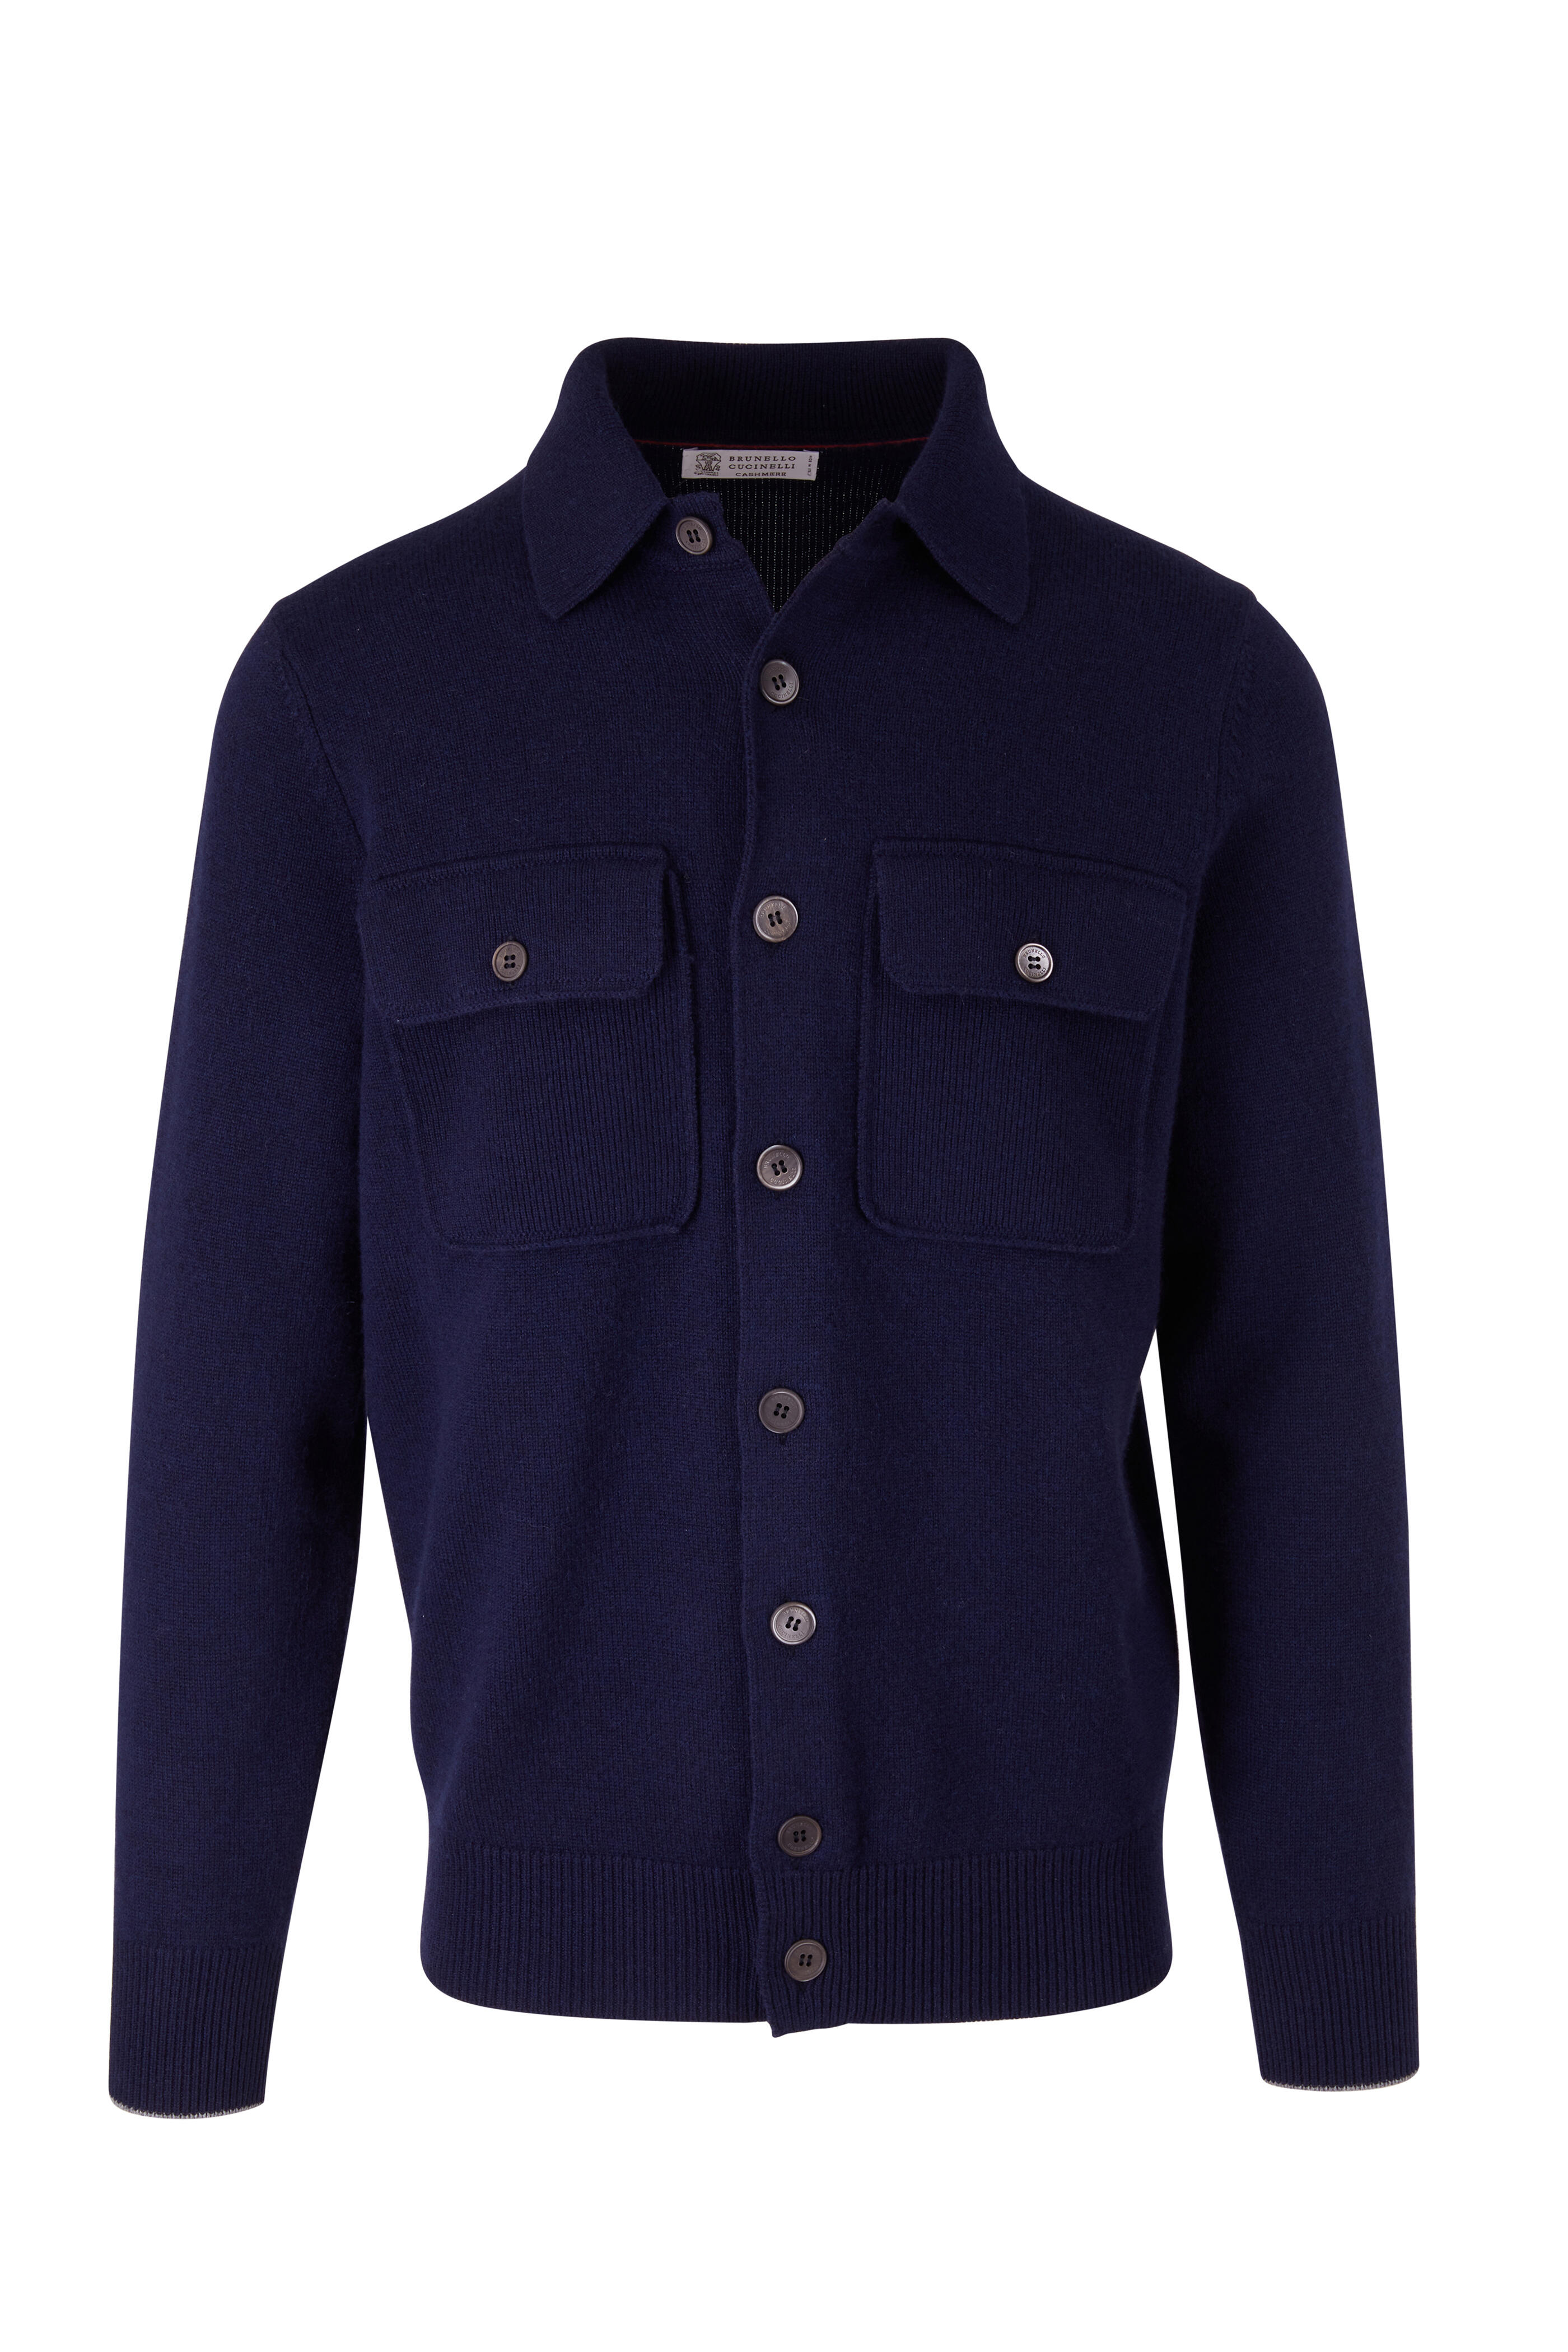 Brunello Cucinelli - Navy Wool, Cashmere & Silk Overshirt